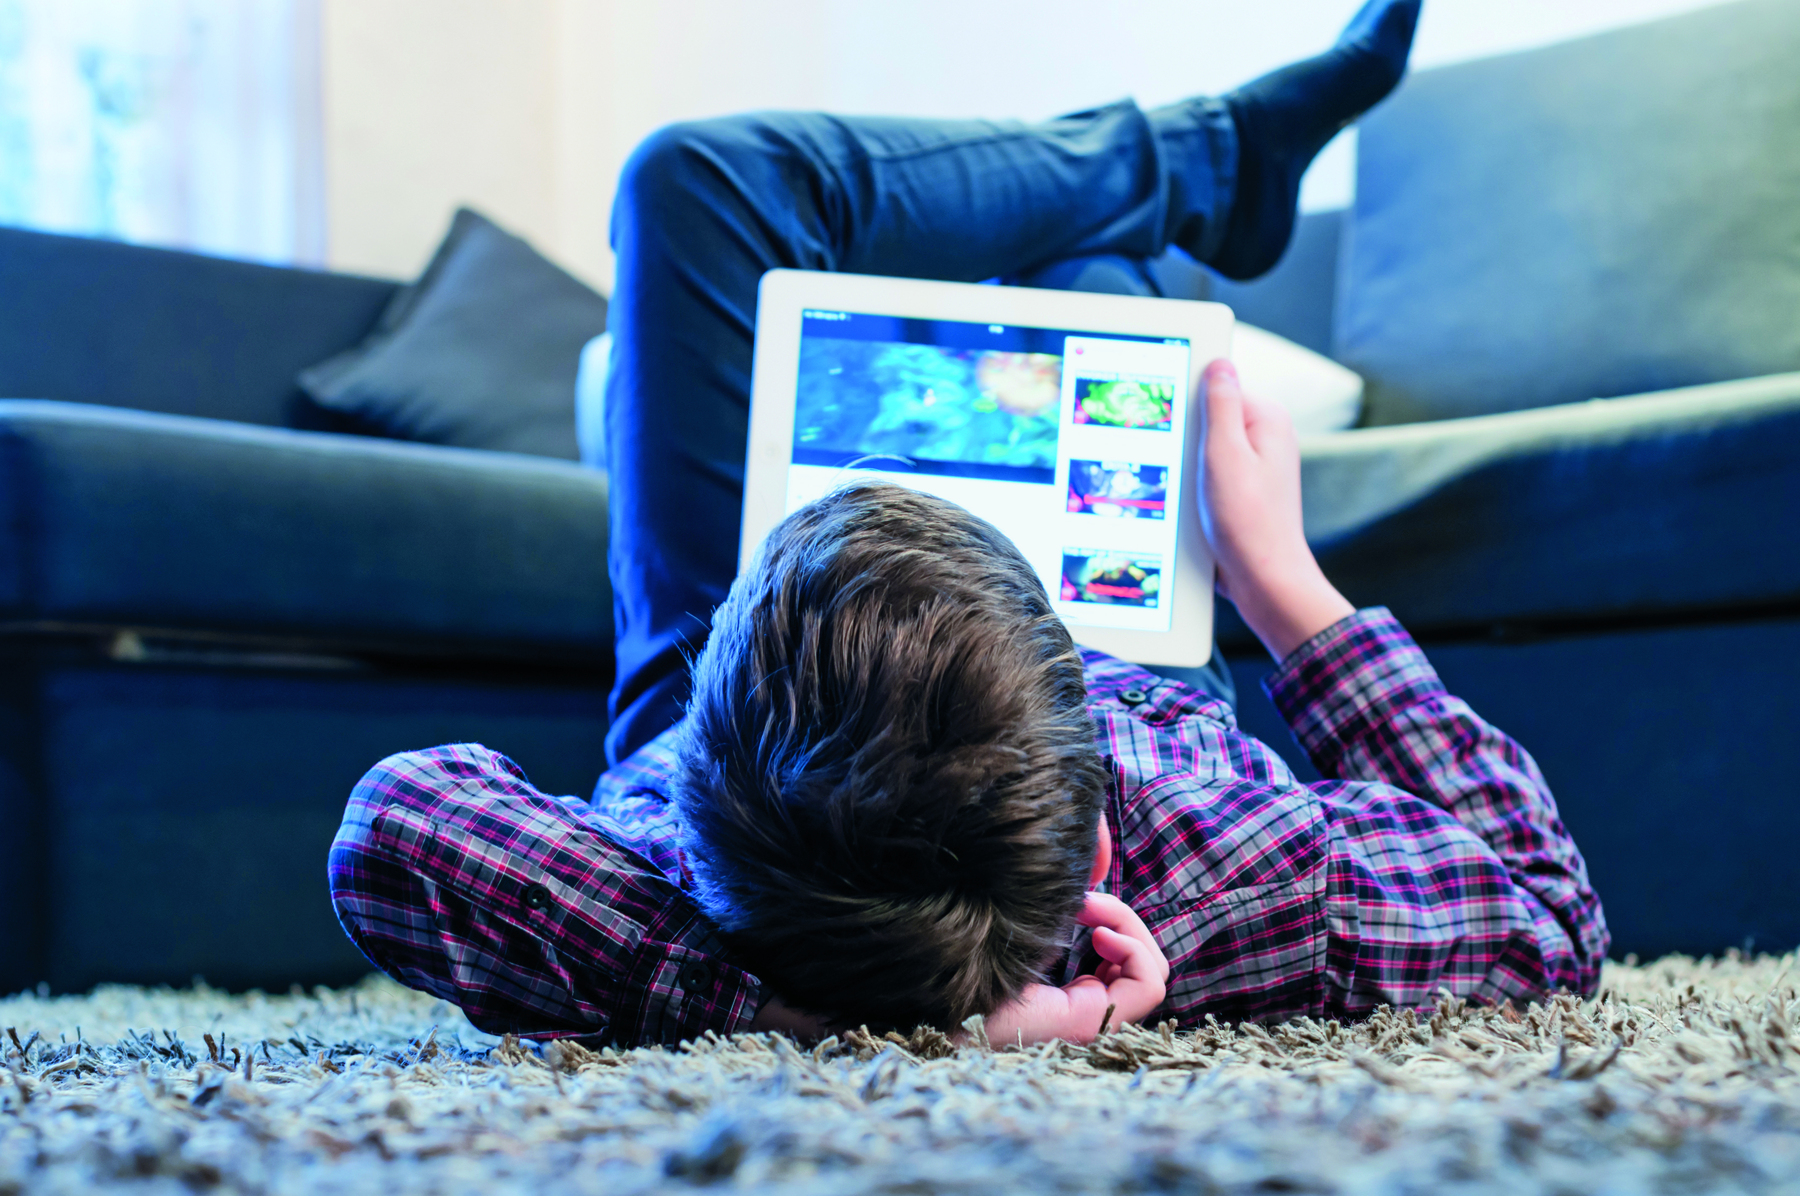 Fotografia. Um menino de cabelo castanho, usando camiseta xadrez está deitado no chão com as pernas cruzadas para cima. Ele está segurando e um tablet branco apoiado na barriga. Na tela do tablet há uma plataforma de streaming de vídeos.